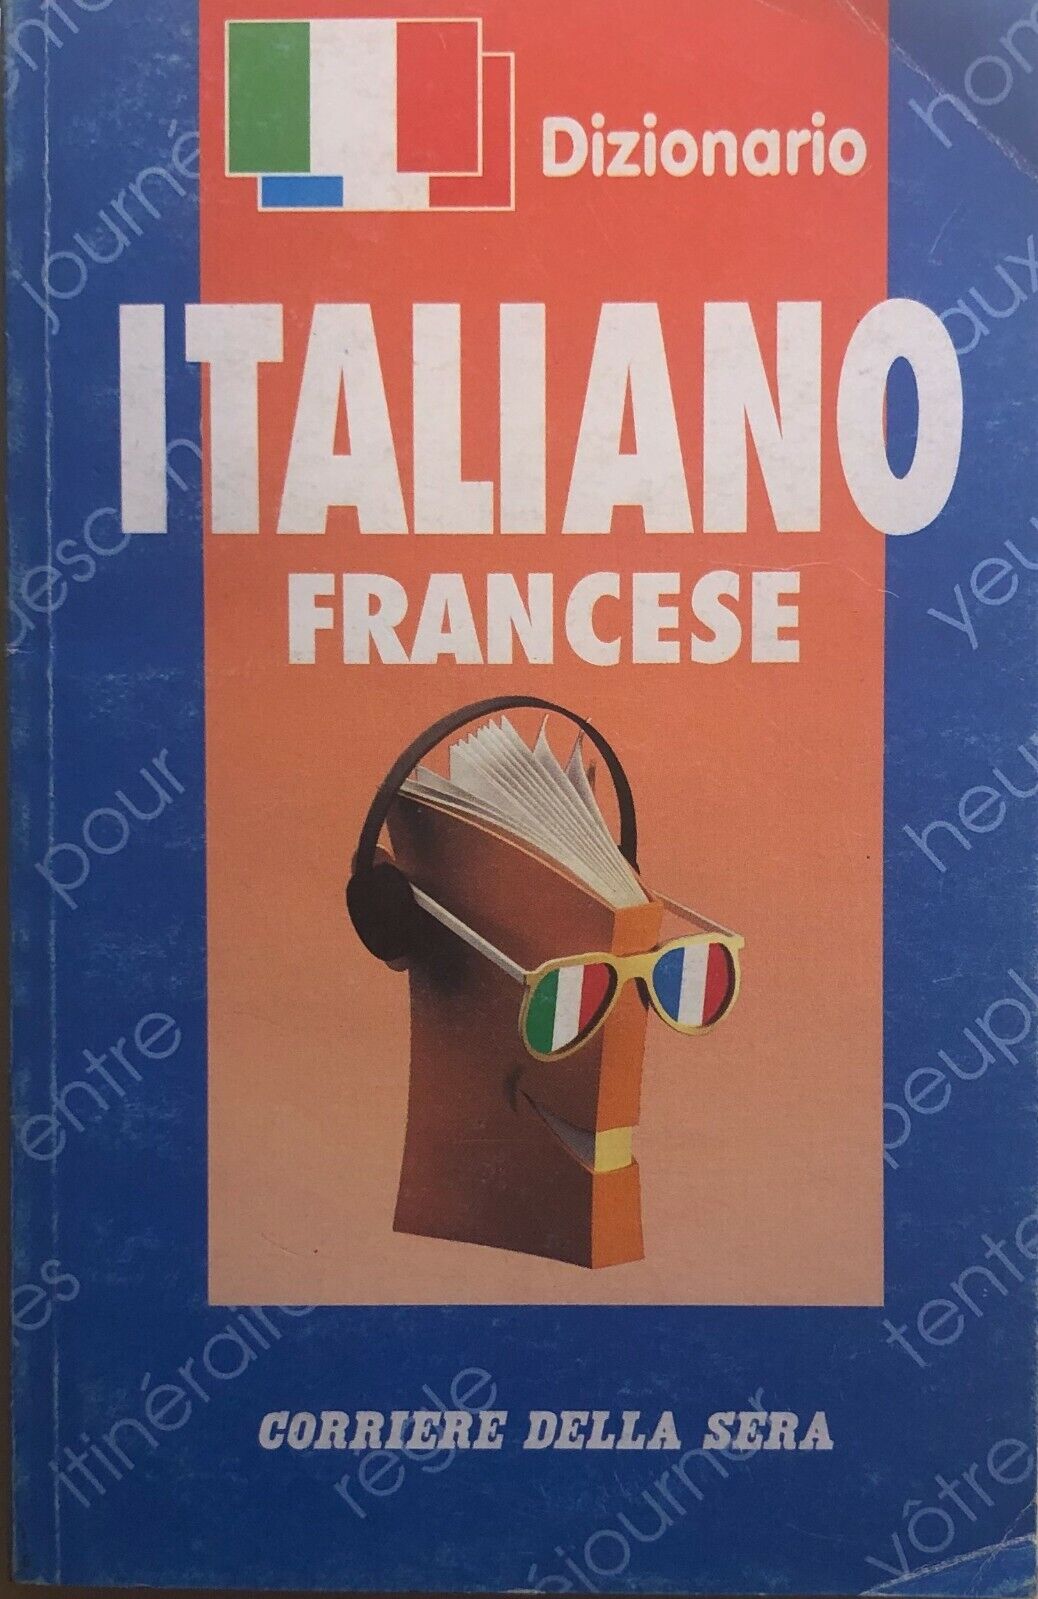 Dizionario Italiano-francese di Aa.vv., 1993, Corriere Della Sera